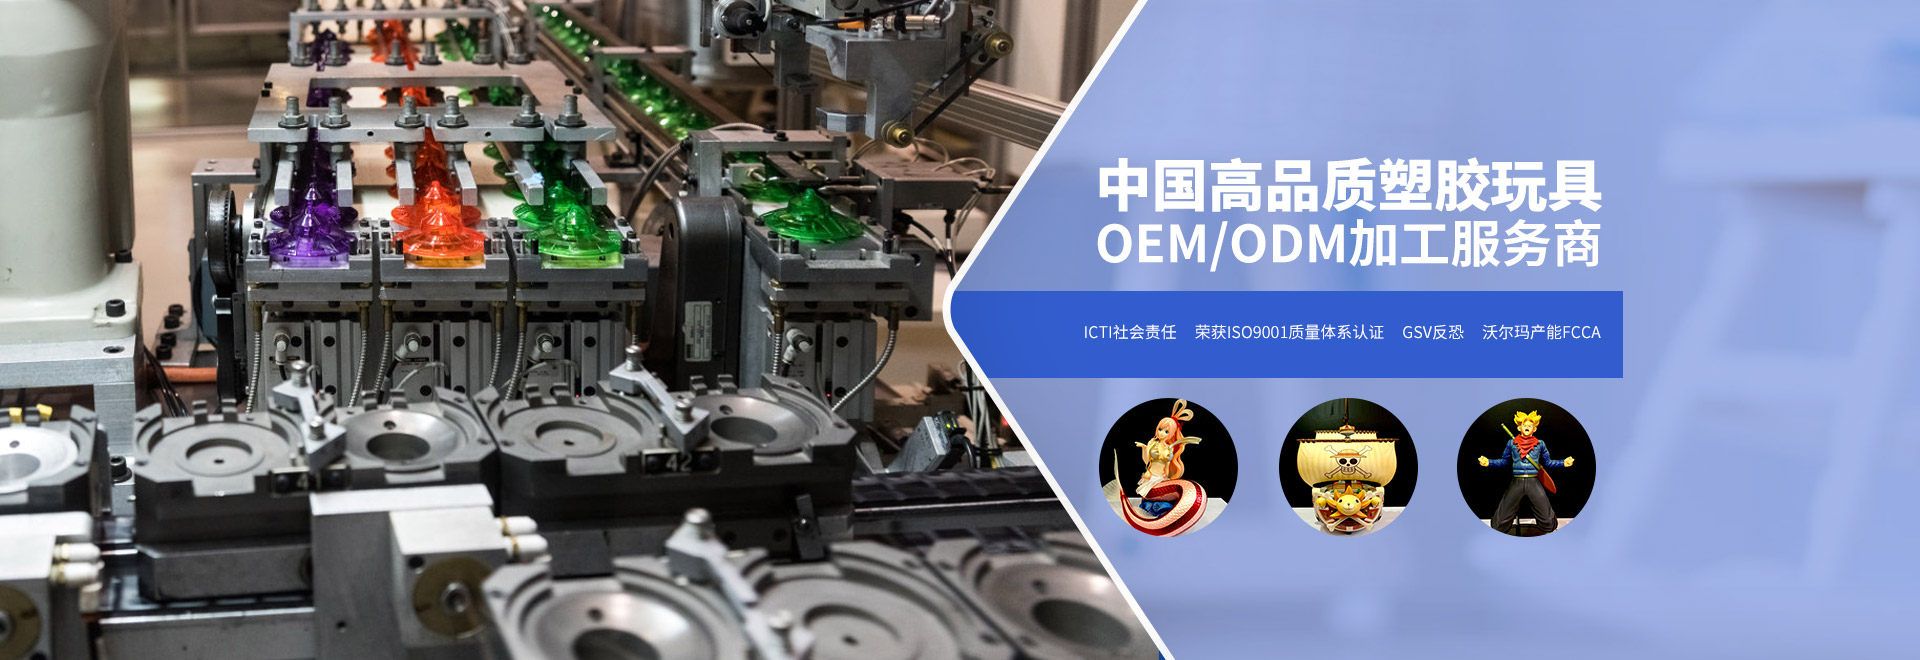 盛马桂-中国高品质塑胶玩具OEM/ODM加工服务商